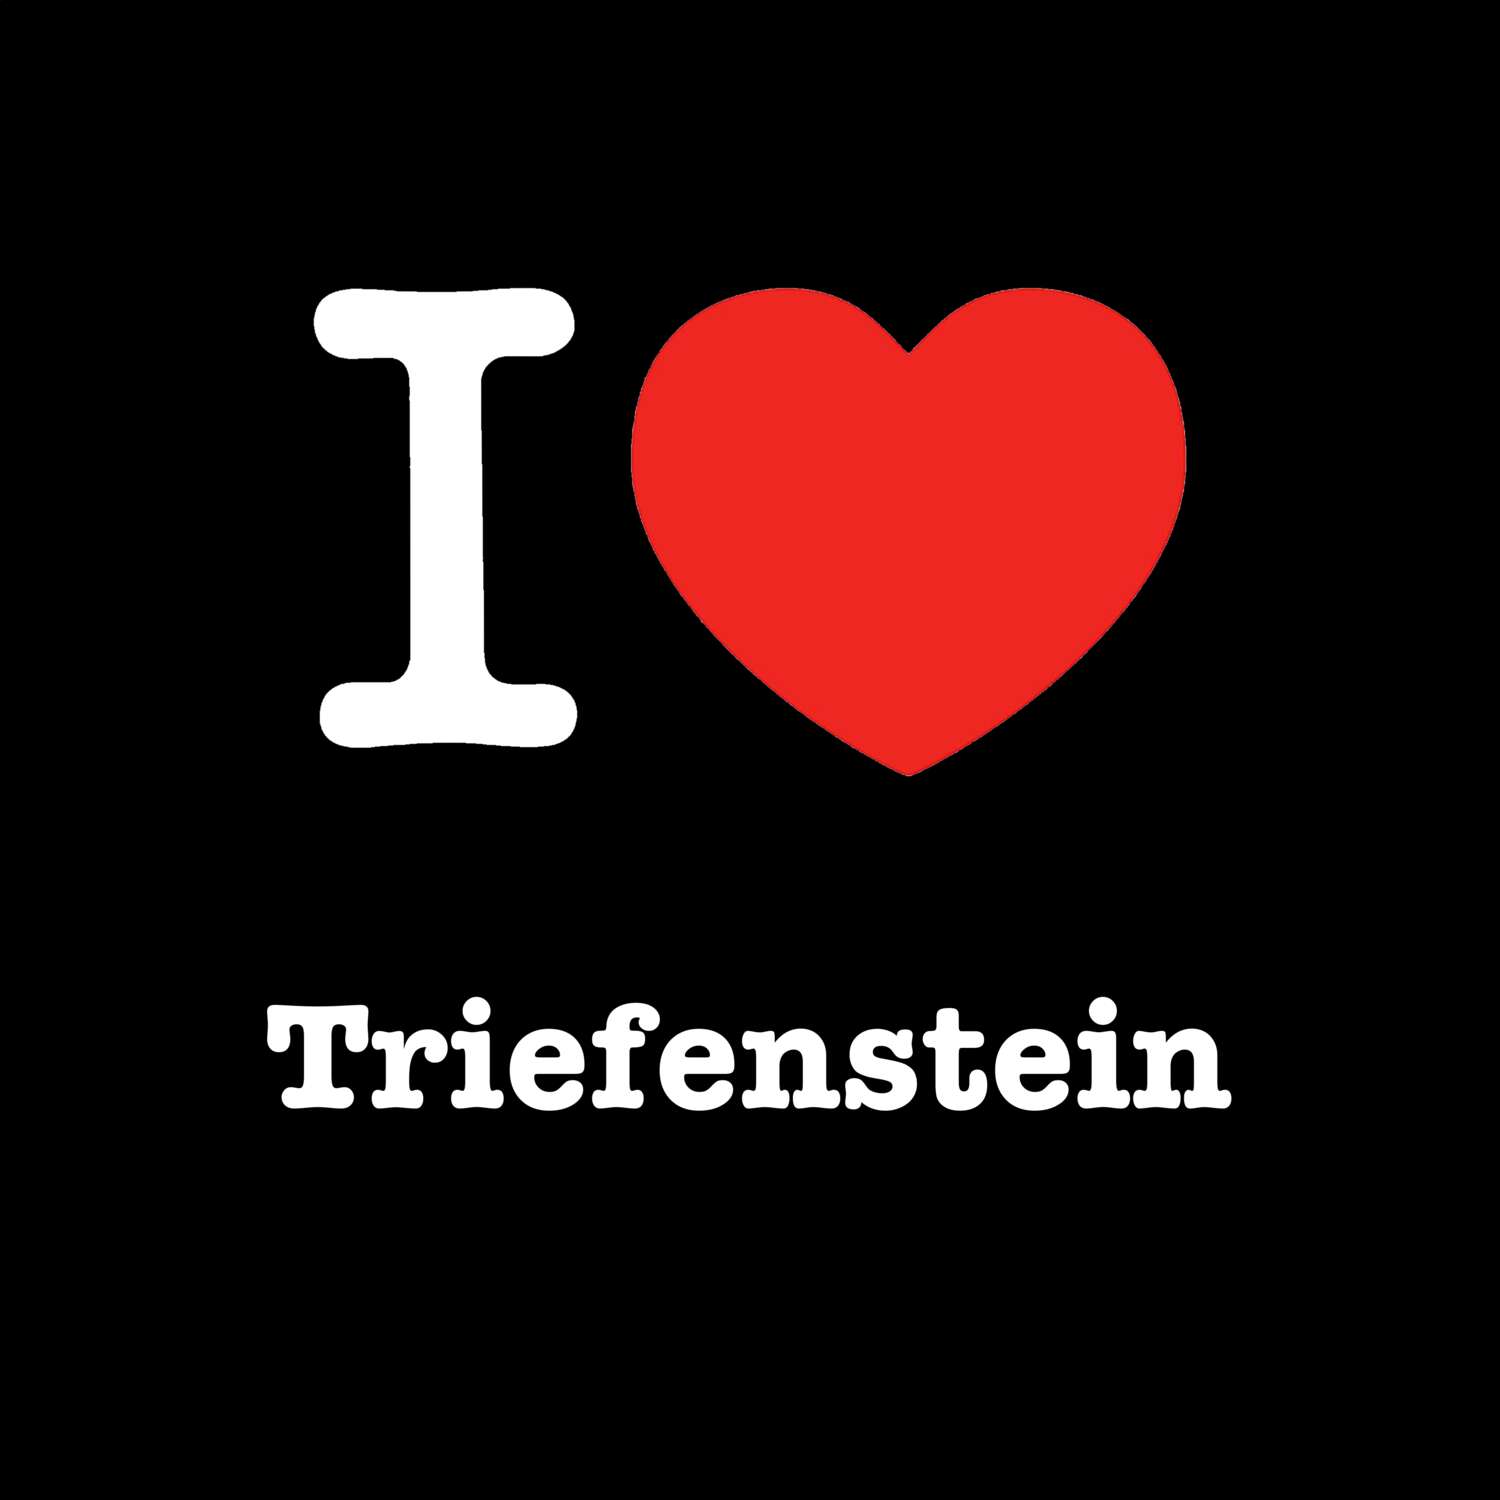 Triefenstein T-Shirt »I love«